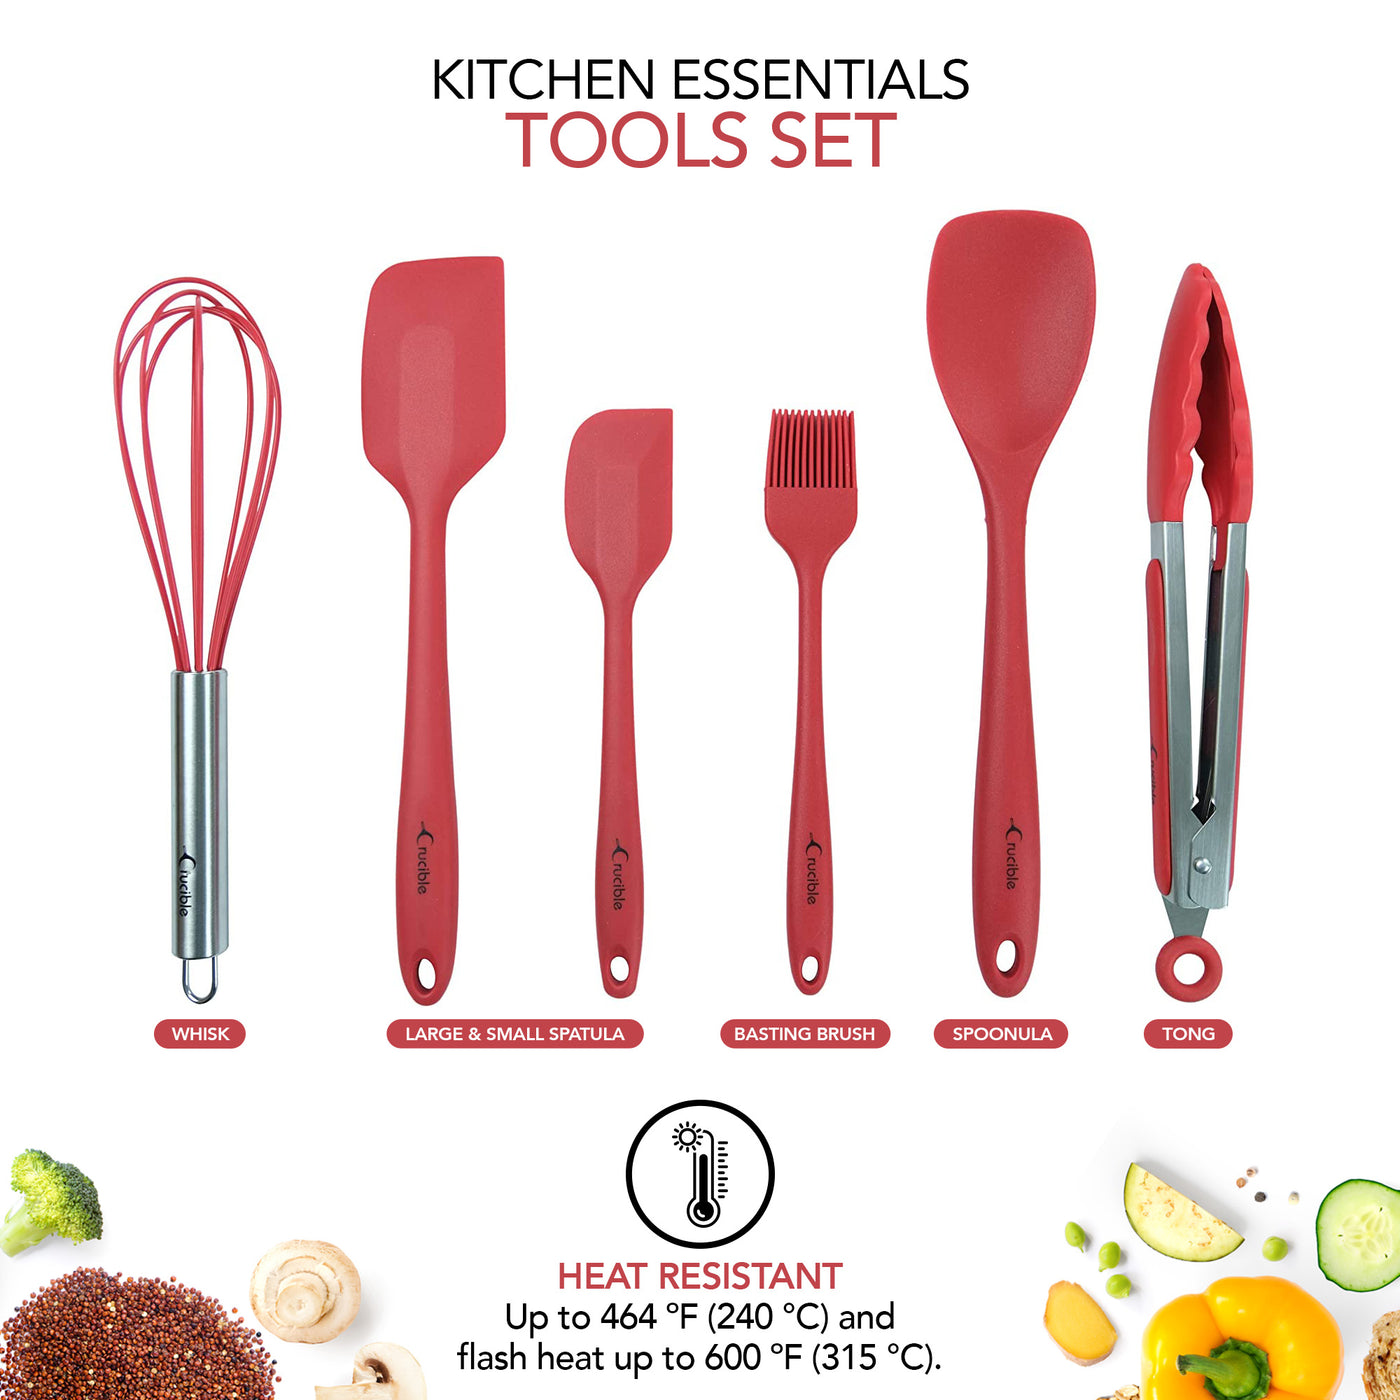 مجموعة أدوات المطبخ، مجموعة أدوات المطبخ والخبز السيليكون الكاملة المكونة من 12 قطعة، مجموعة أدوات الطبخ، أدوات المطبخ - أحمر - Utensilios de Cocinas